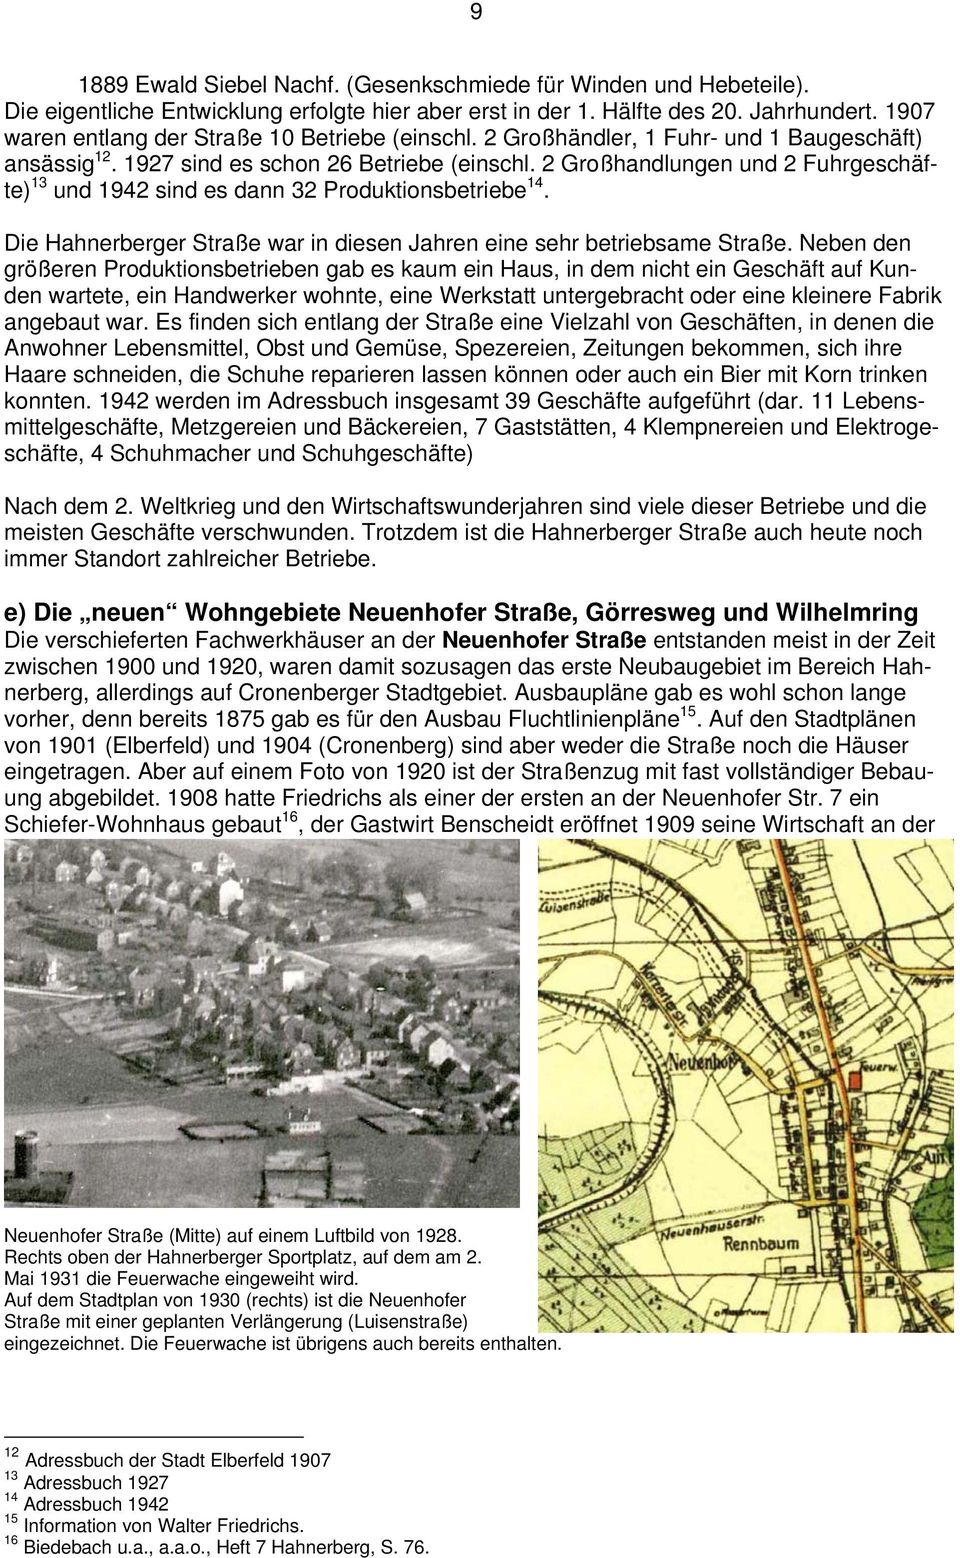 2 Großhandlungen und 2 Fuhrgeschäfte) 13 und 1942 sind es dann 32 Produktionsbetriebe 14. Die Hahnerberger Straße war in diesen Jahren eine sehr betriebsame Straße.